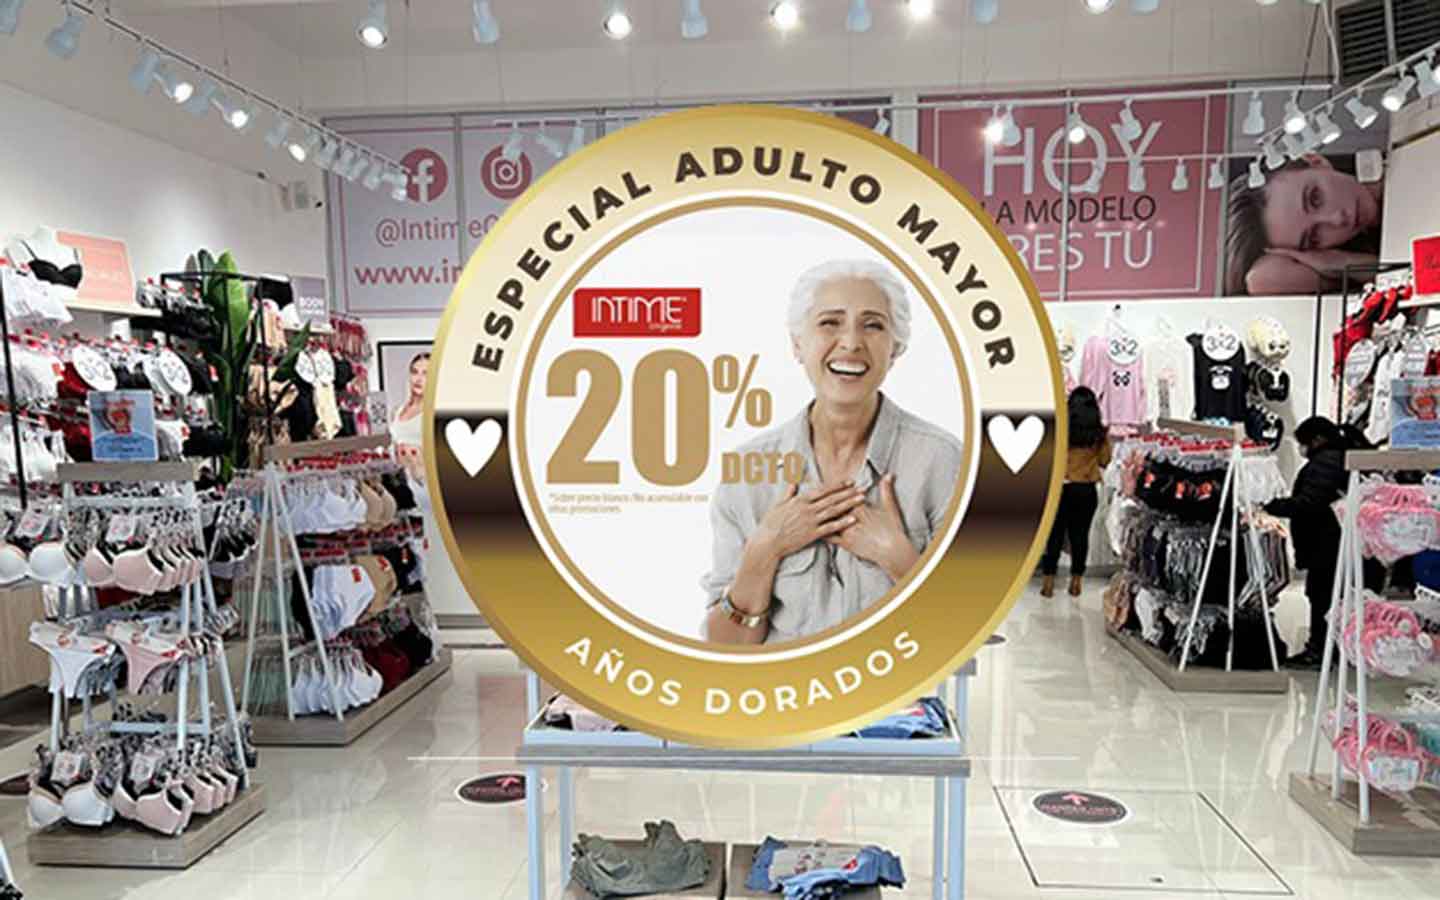 Personas mayores tendrán descuento de 20% en tiendas | TELEVITOS